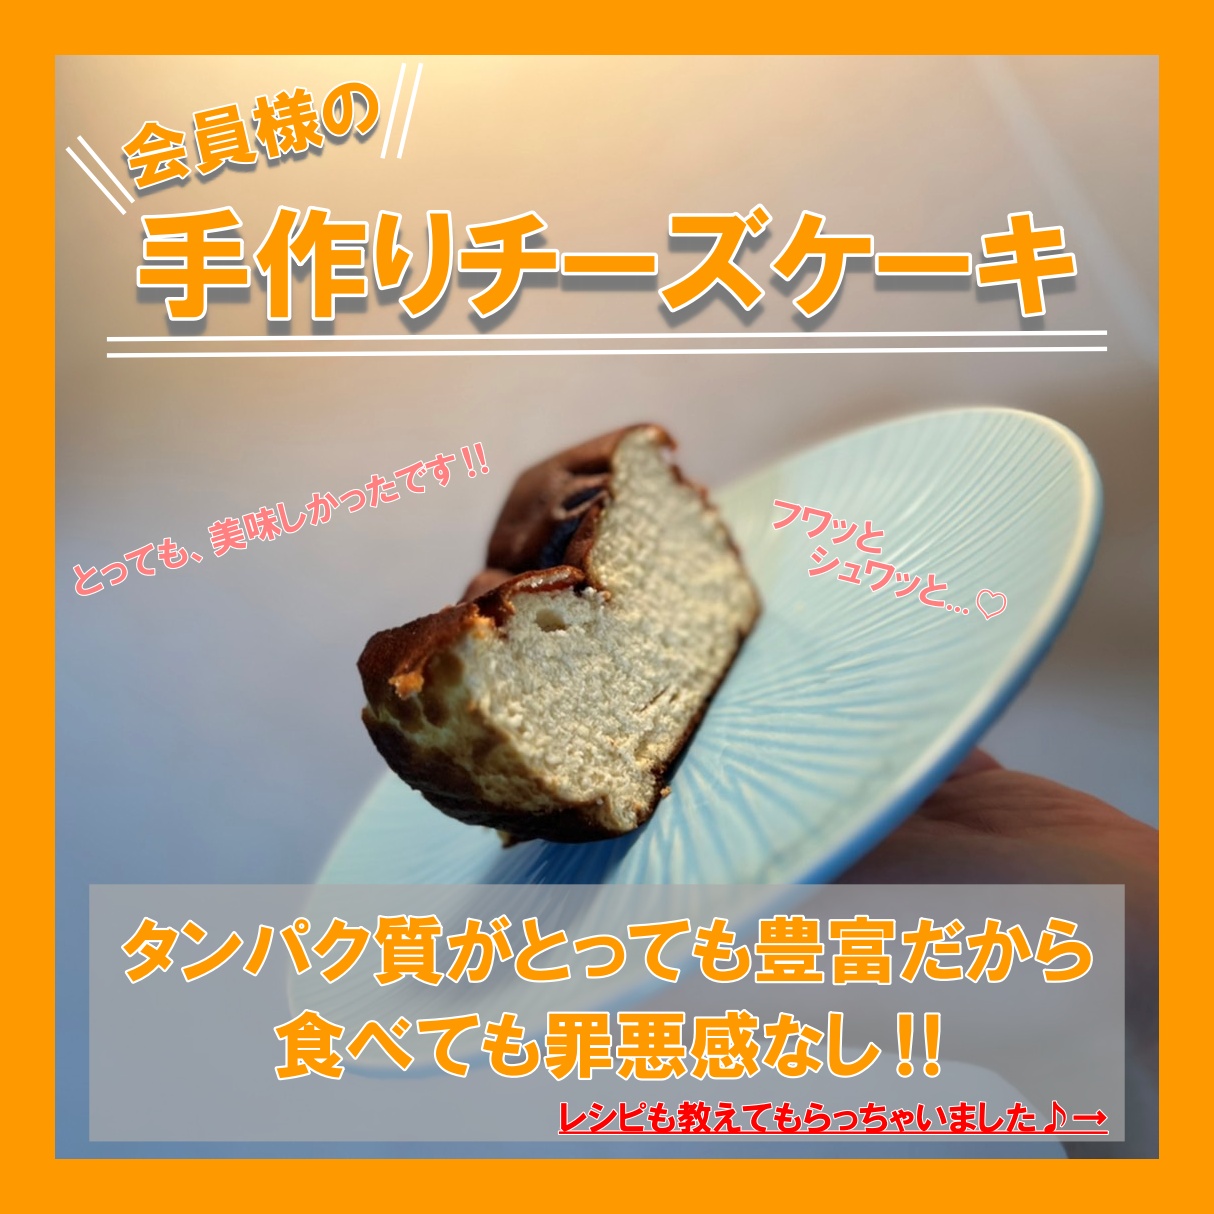 【超ヘルシー‼プロテインチーズケーキ】